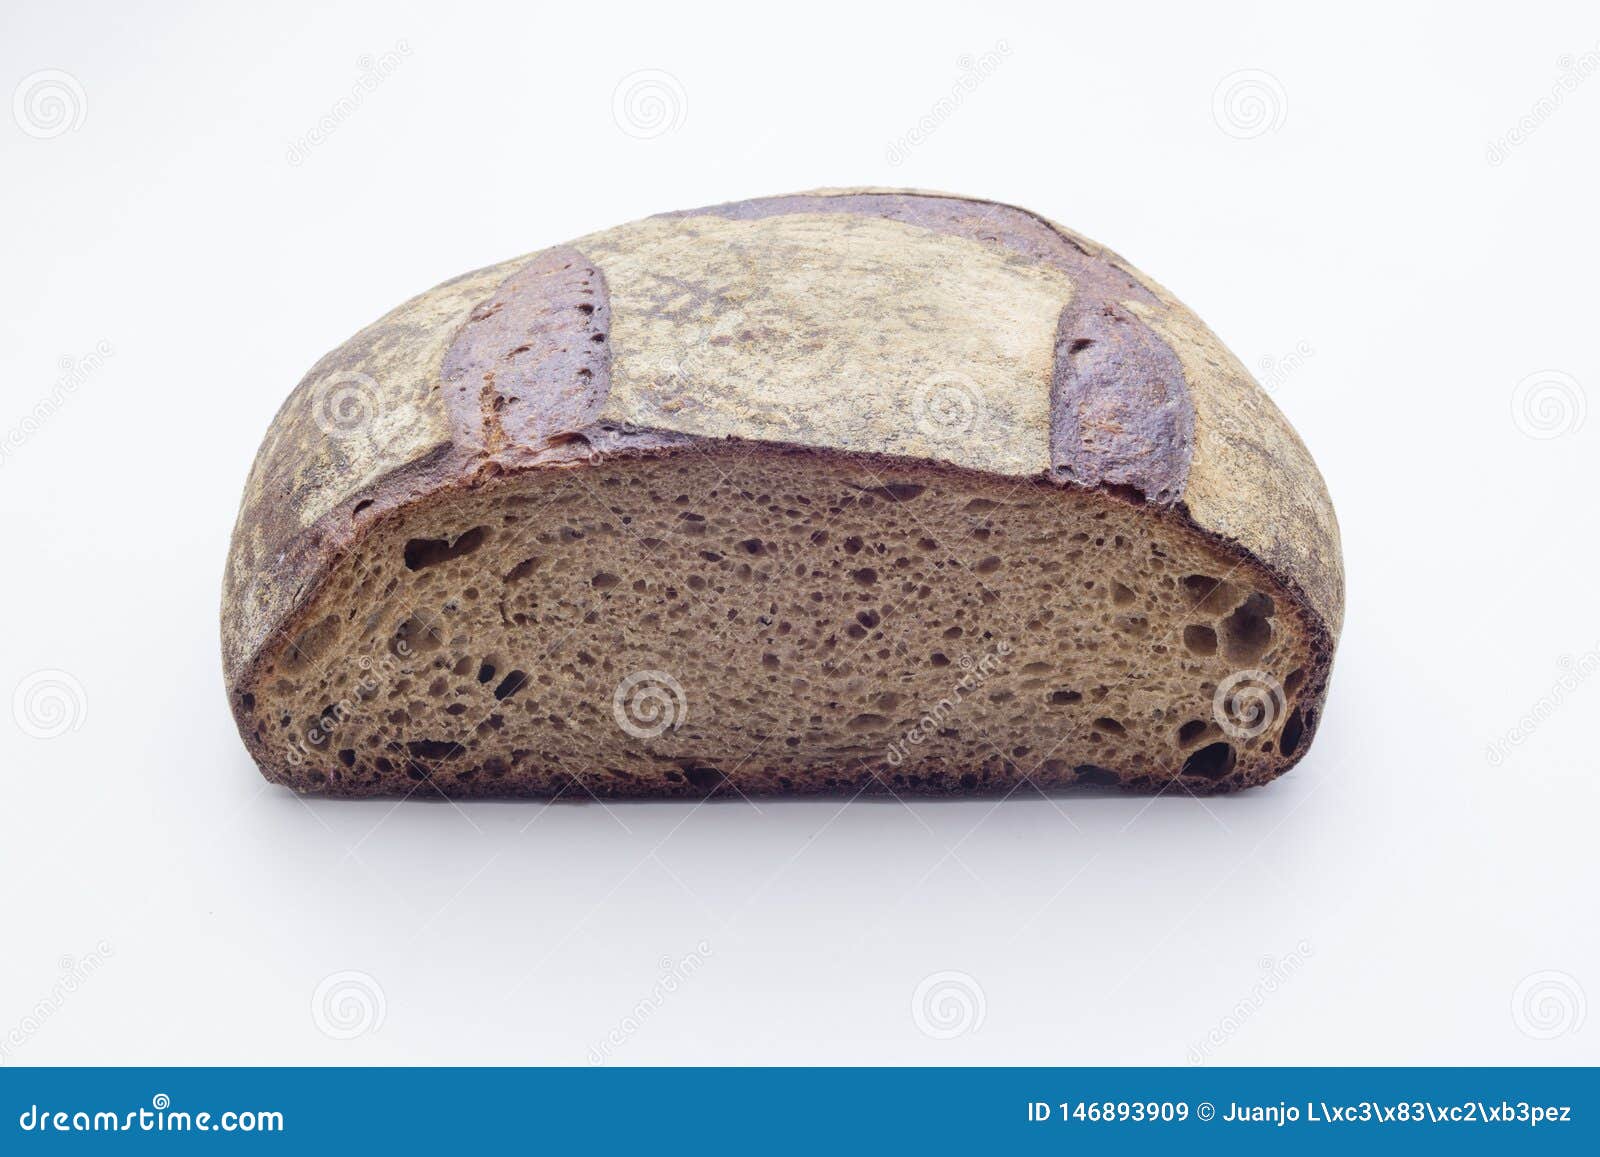 德国面包 面包 面包店 - Pixabay上的免费照片 - Pixabay